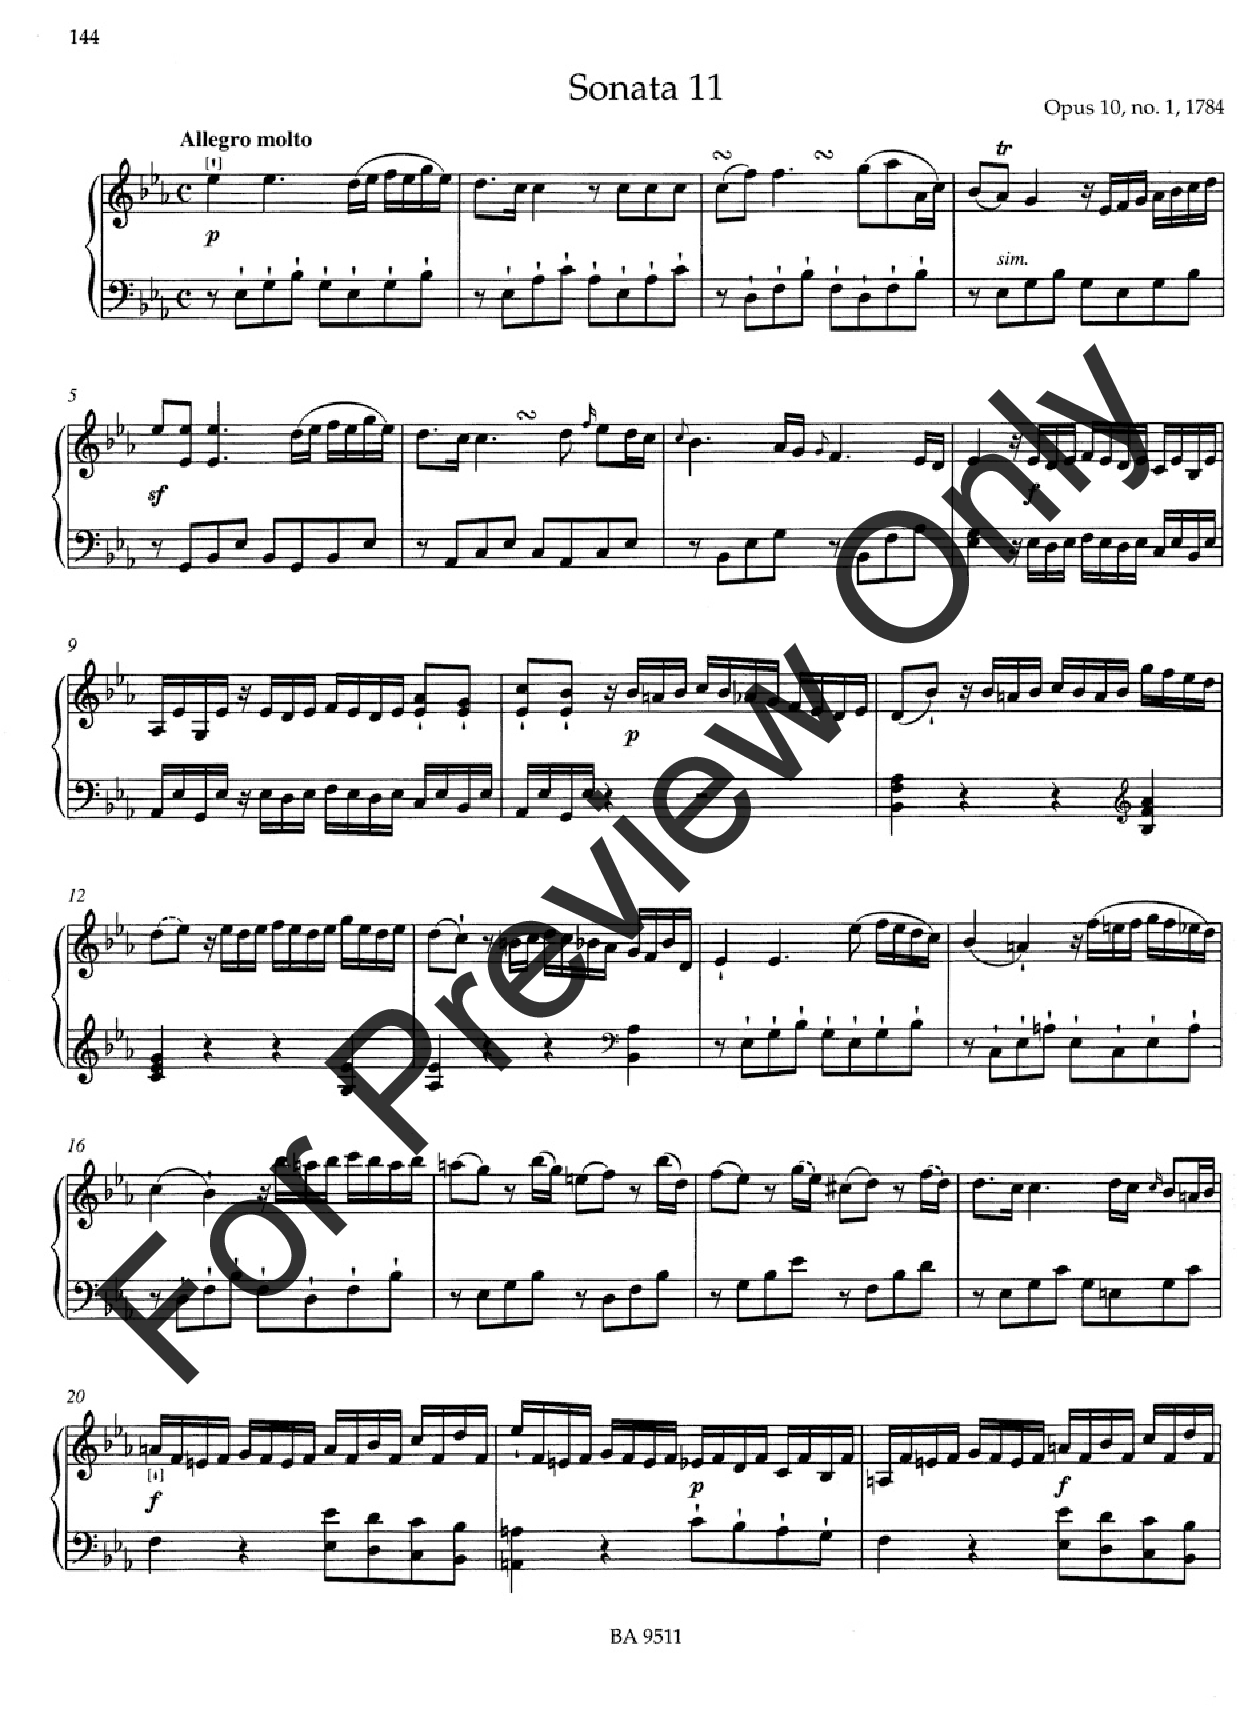 Complete Sonatas for Keyboard #1- 4 Sonatas #1- 50